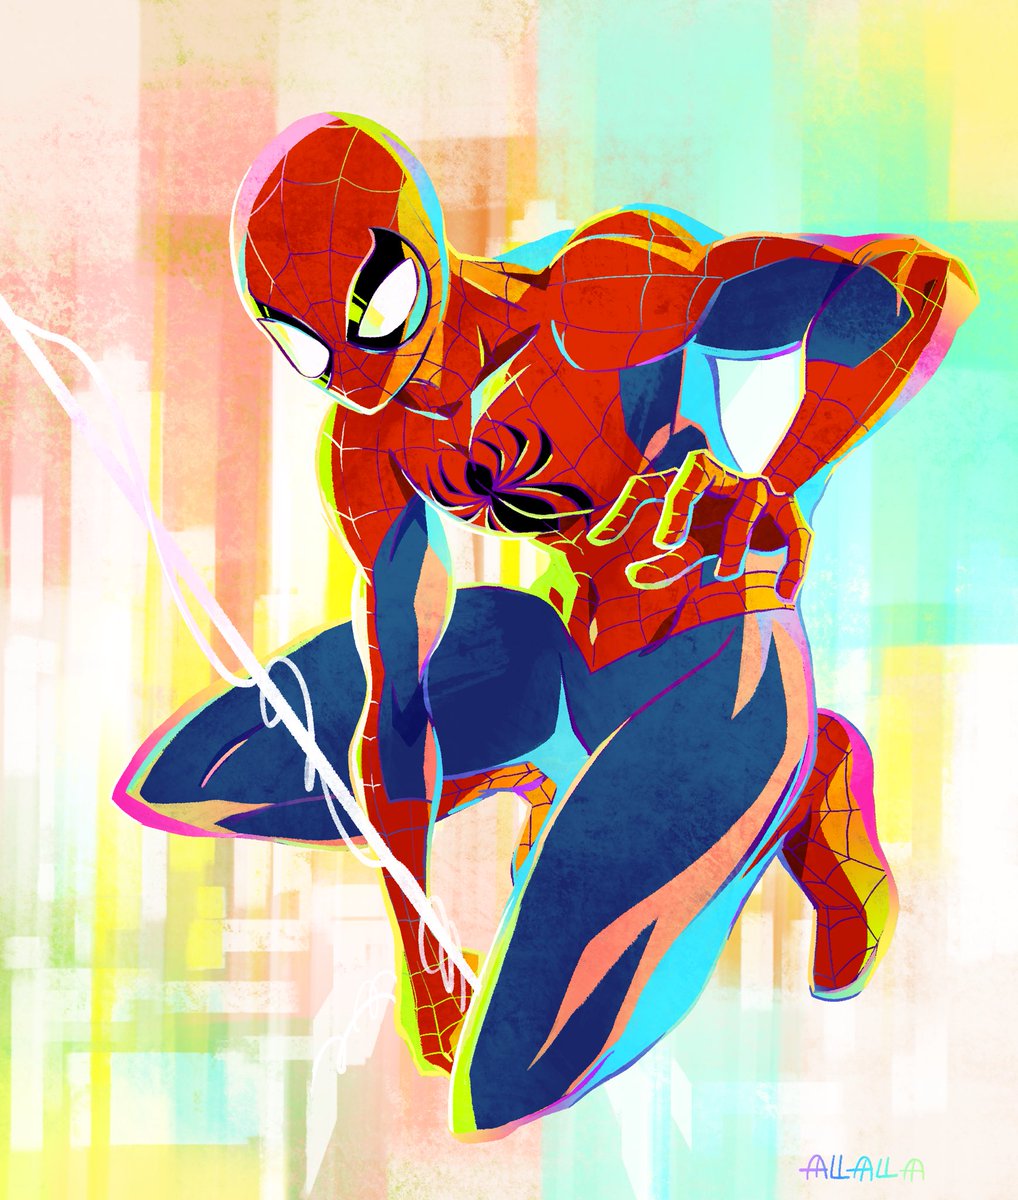 「spider-man」|あらら🍣🍕のイラスト